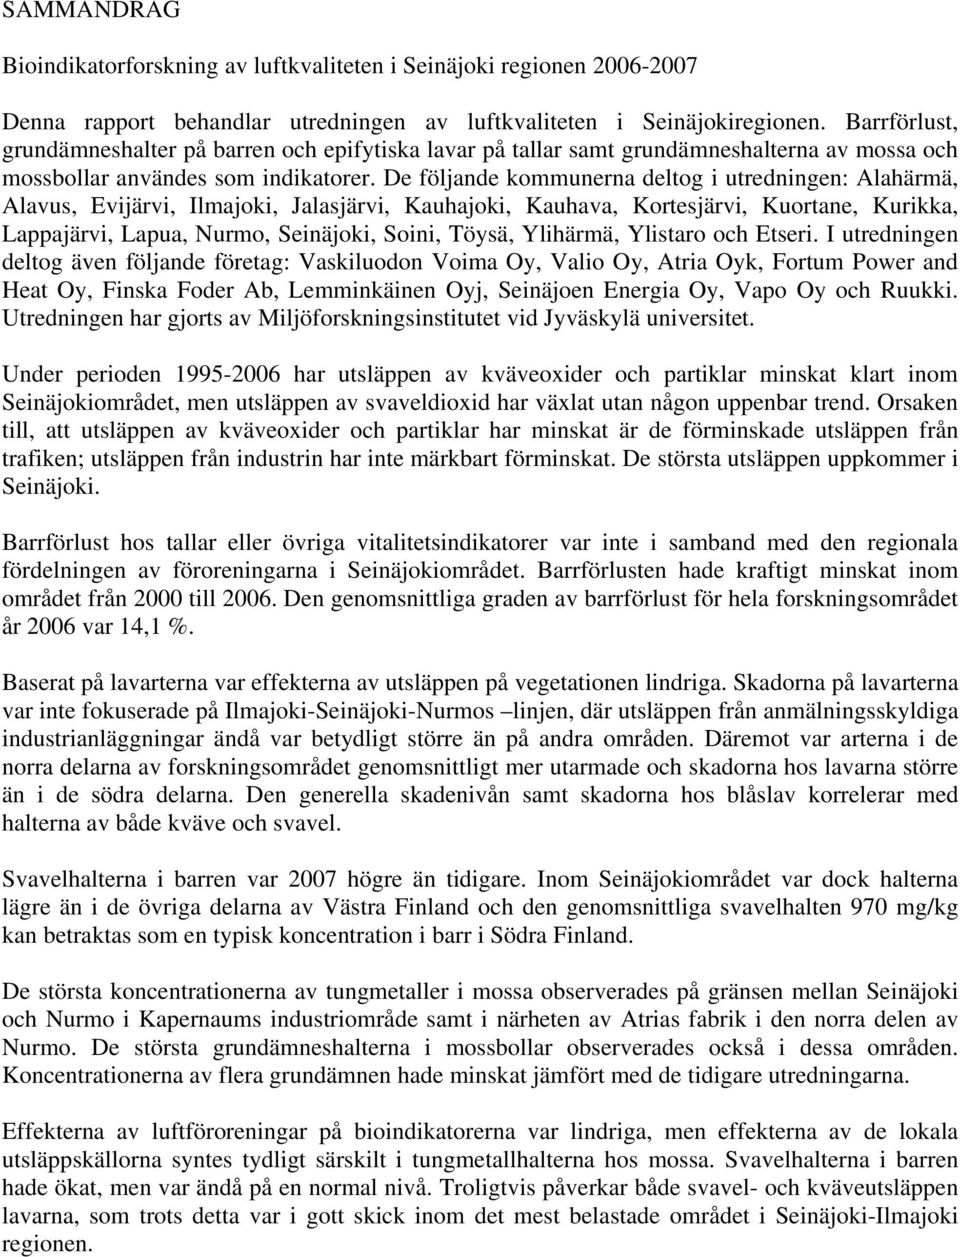 De följande kommunerna deltog i utredningen: Alahärmä, Alavus, Evijärvi, Ilmajoki, Jalasjärvi, Kauhajoki, Kauhava, Kortesjärvi, Kuortane, Kurikka, Lappajärvi, Lapua, Nurmo, Seinäjoki, Soini, Töysä,